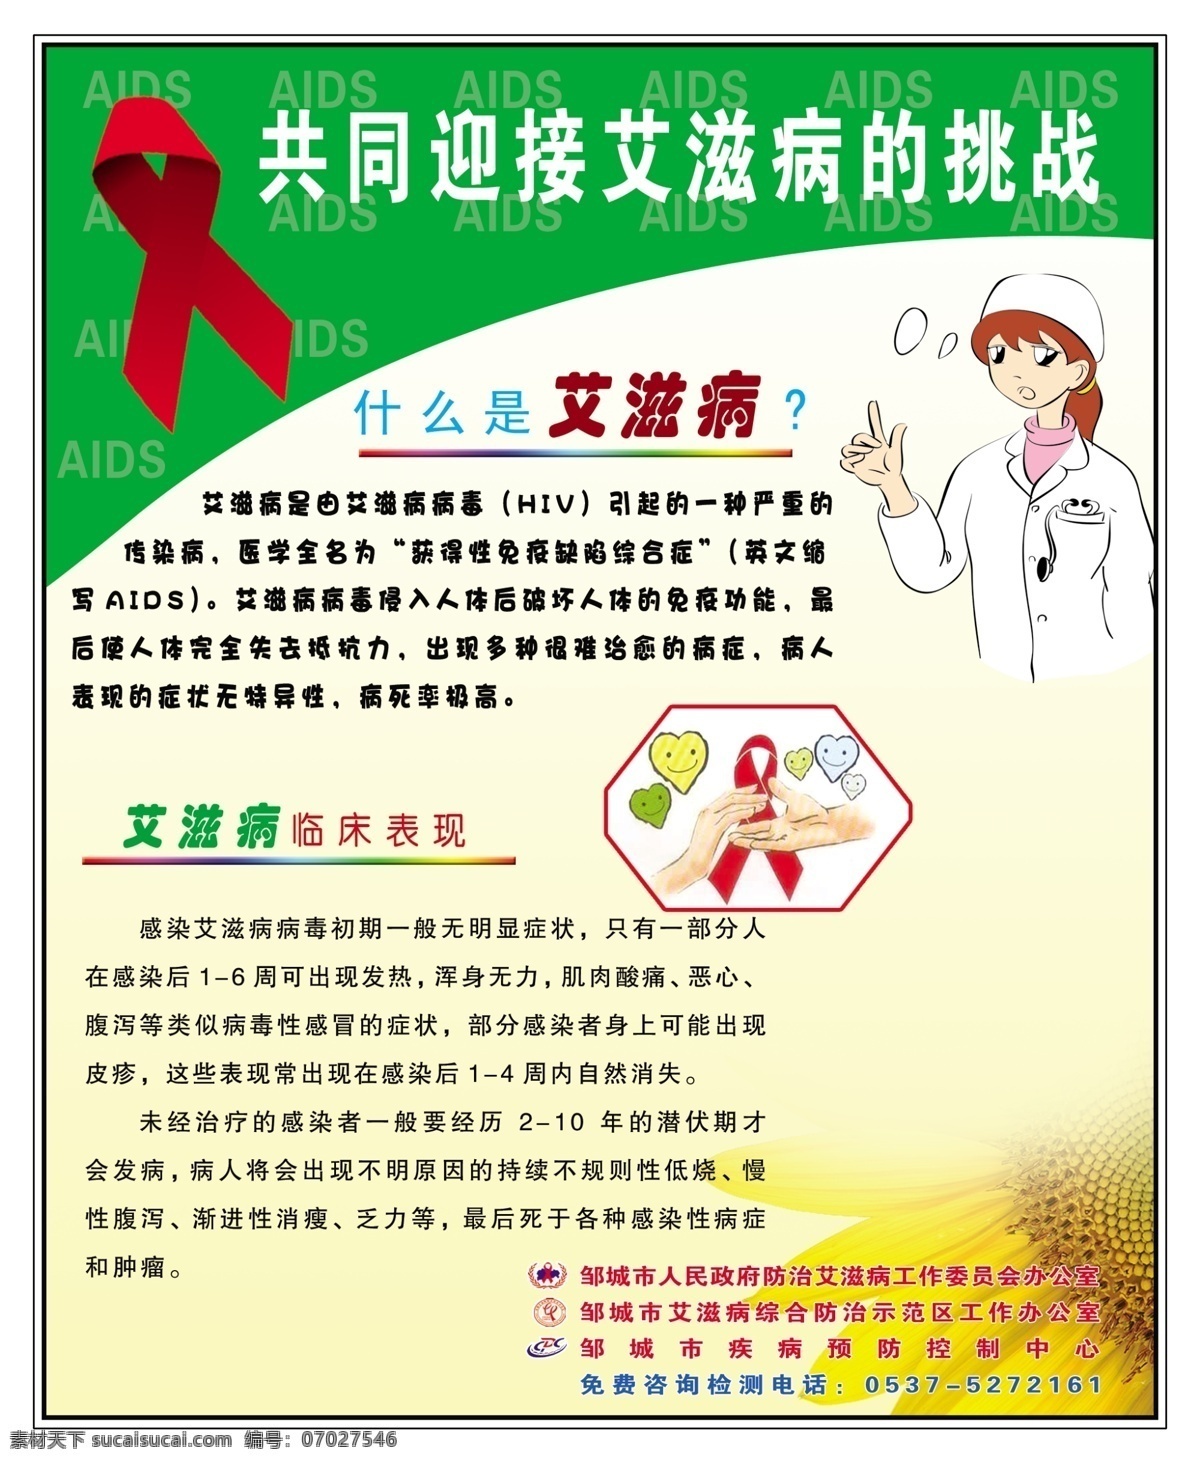 共同 迎接 艾滋病 挑战 红丝带 什么是艾滋病 临床表现 卡通医生 向日葵 展板模板 广告设计模板 源文件